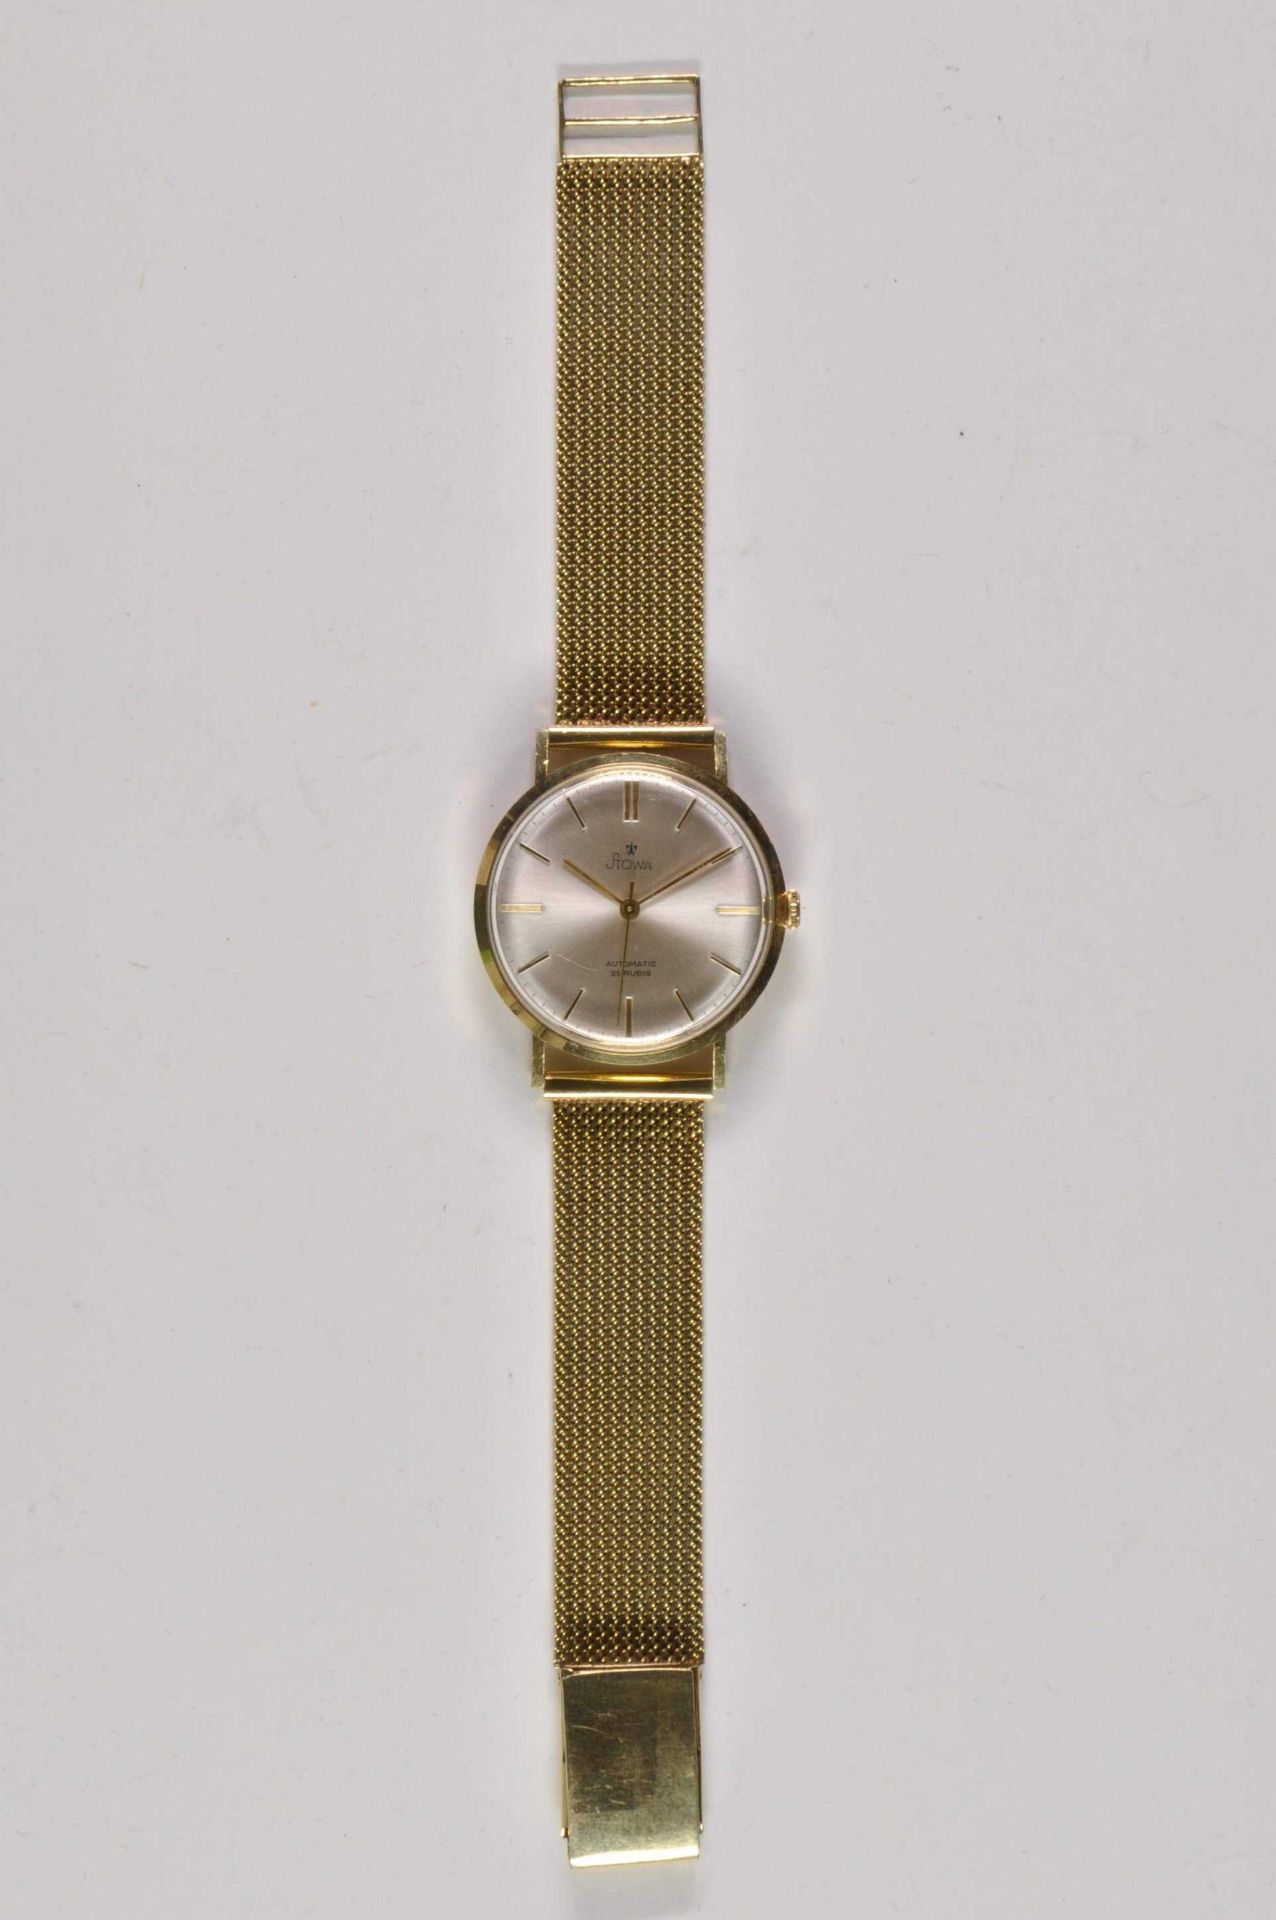 Stowa Herren Armbanduhr. Ca. 34mm, 585er Gold, Automatik. Silberfarbenes Ziffernblatt, goldene Indiz - Bild 2 aus 3